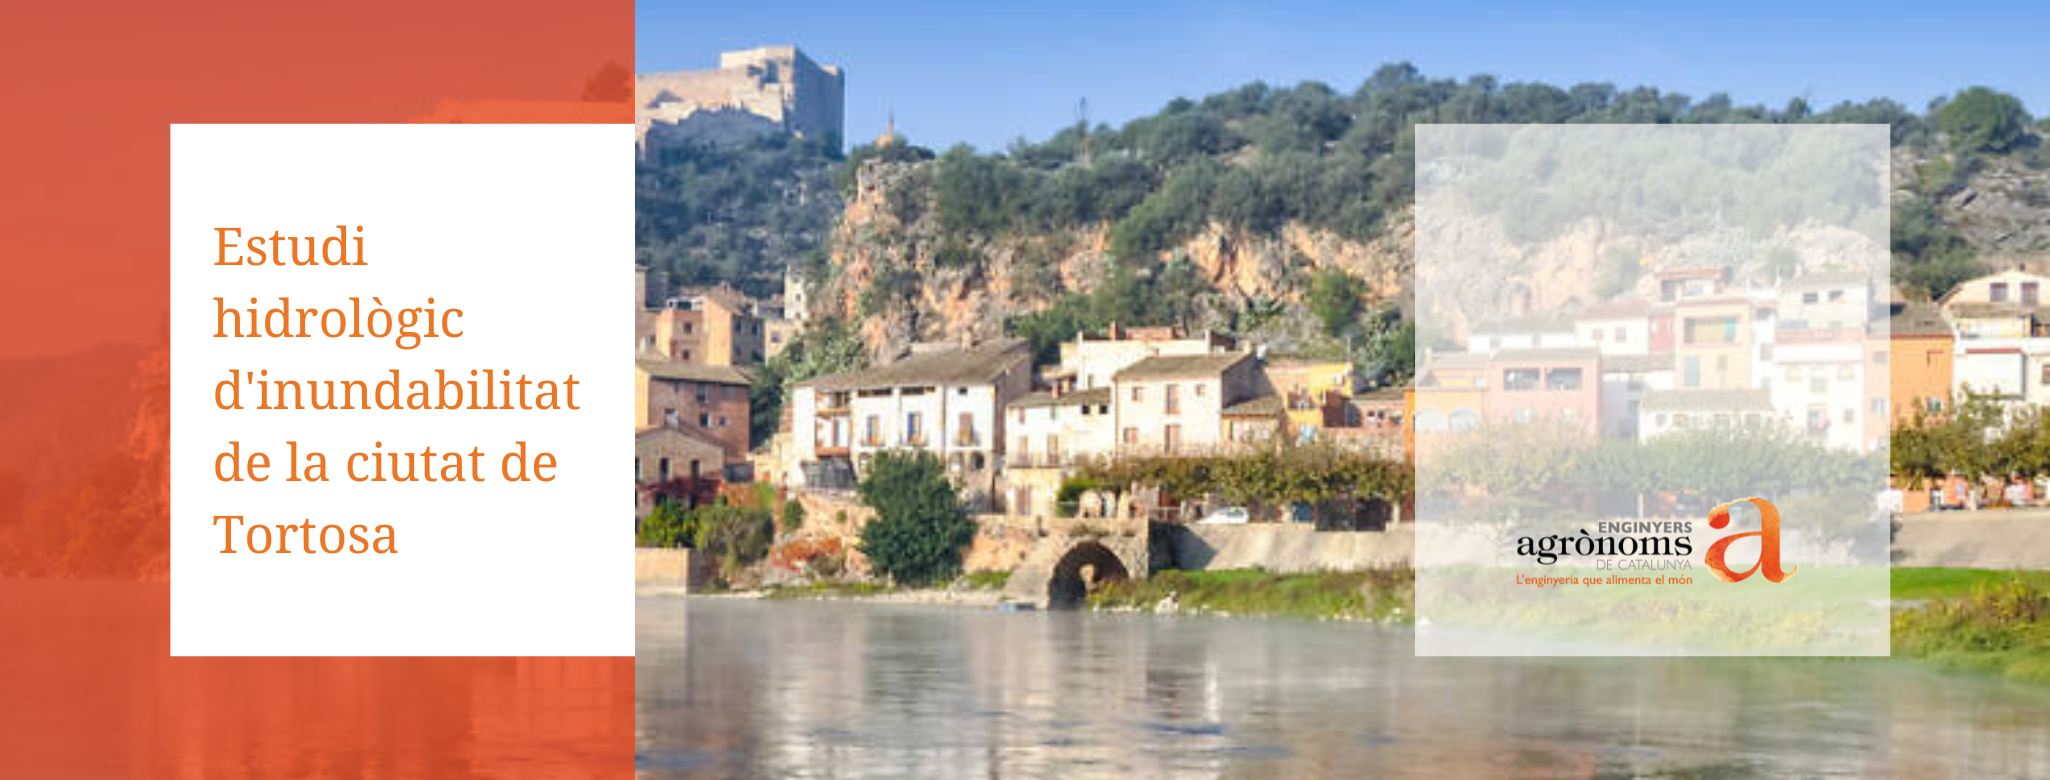 Estudi hidrològic d’inundabilitat de la ciutat de Tortosa